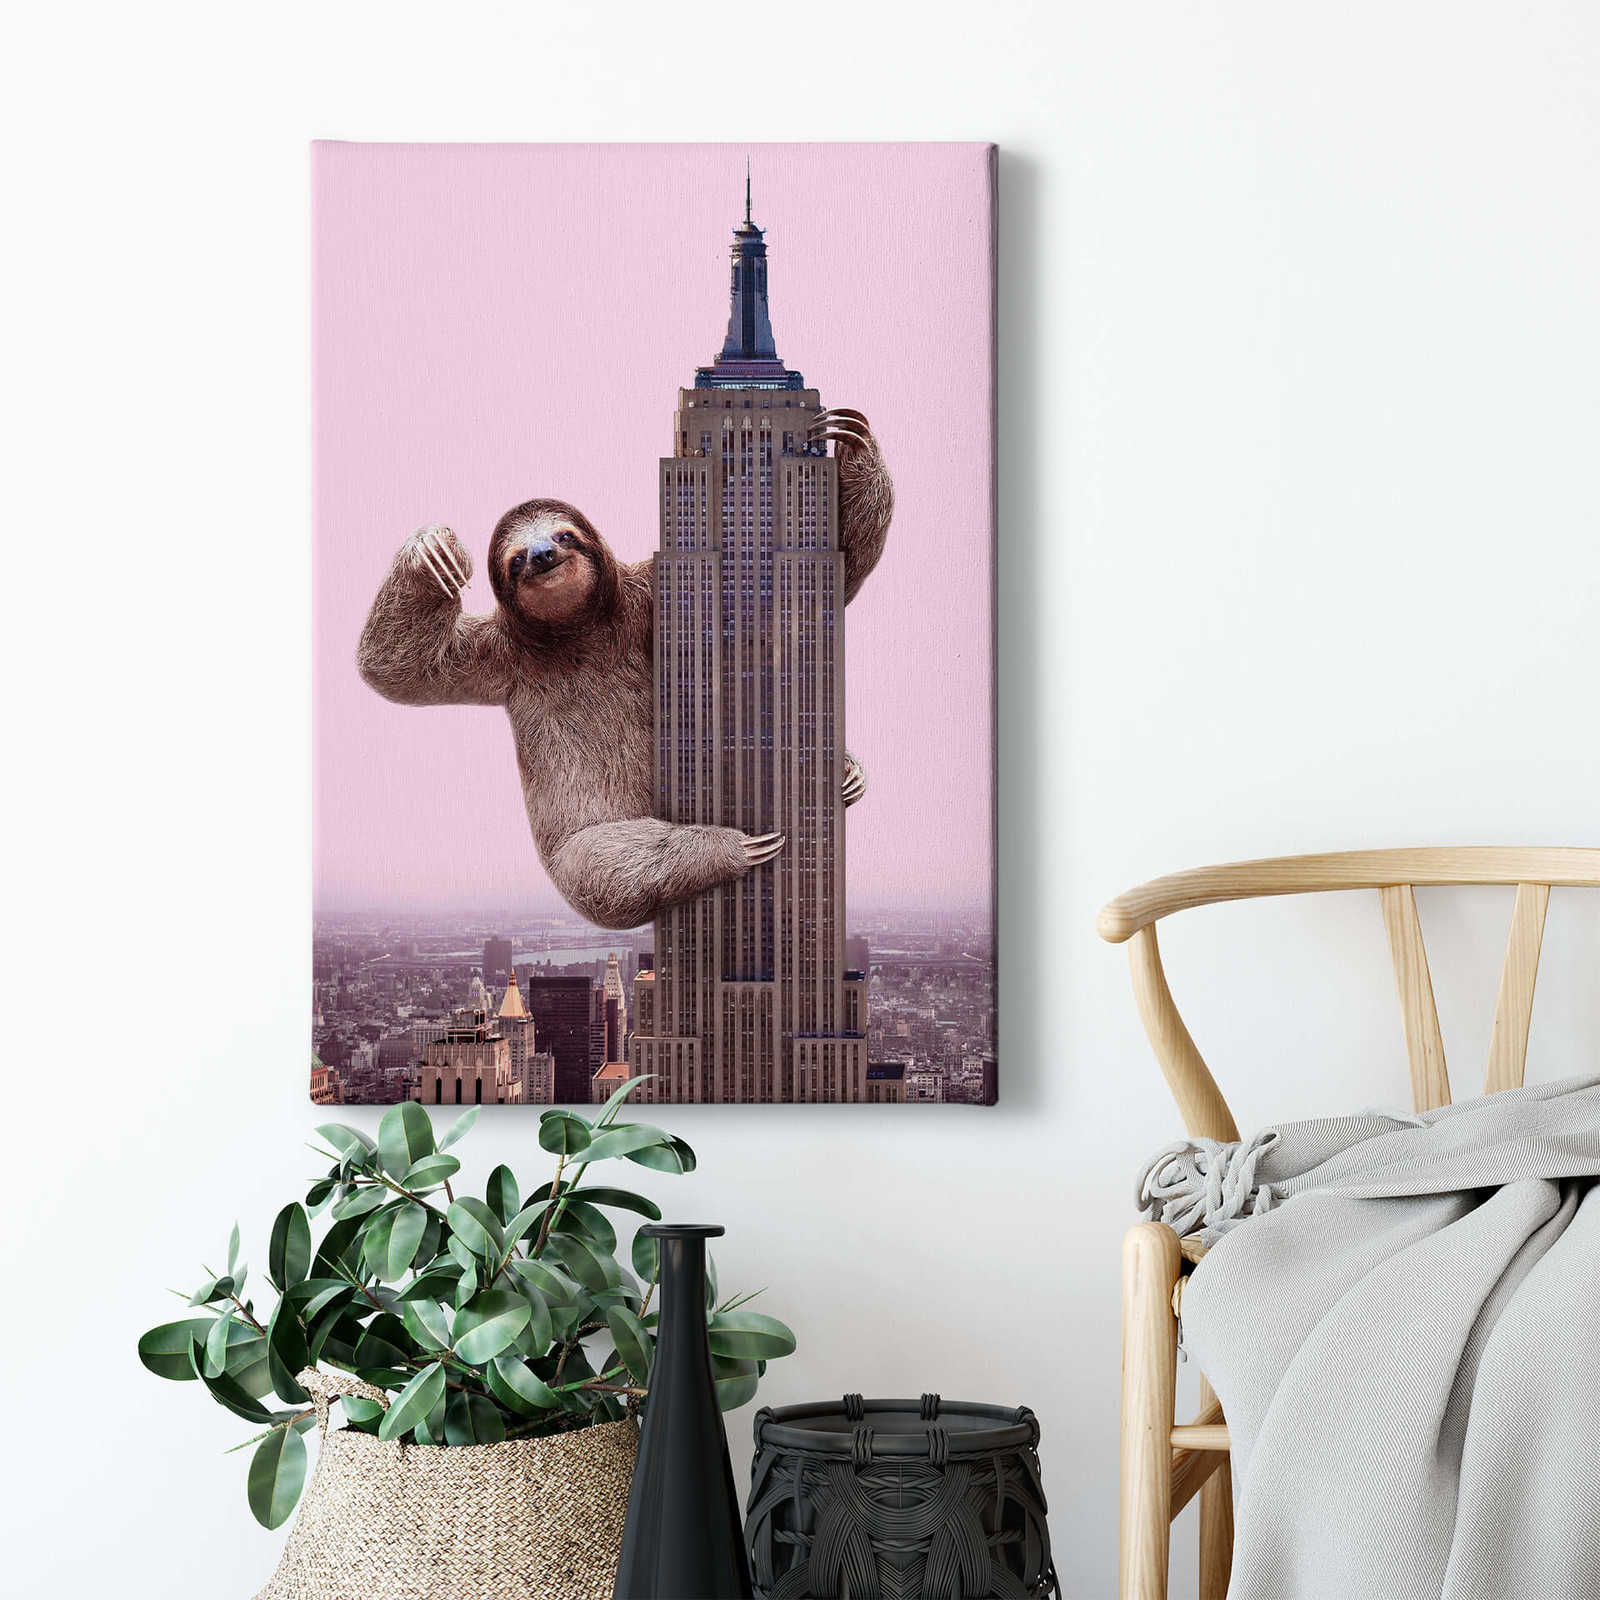             Leinwandbild Faultier von Fuentes, "King Sloth" – 0,50 m x 0,70 m
        